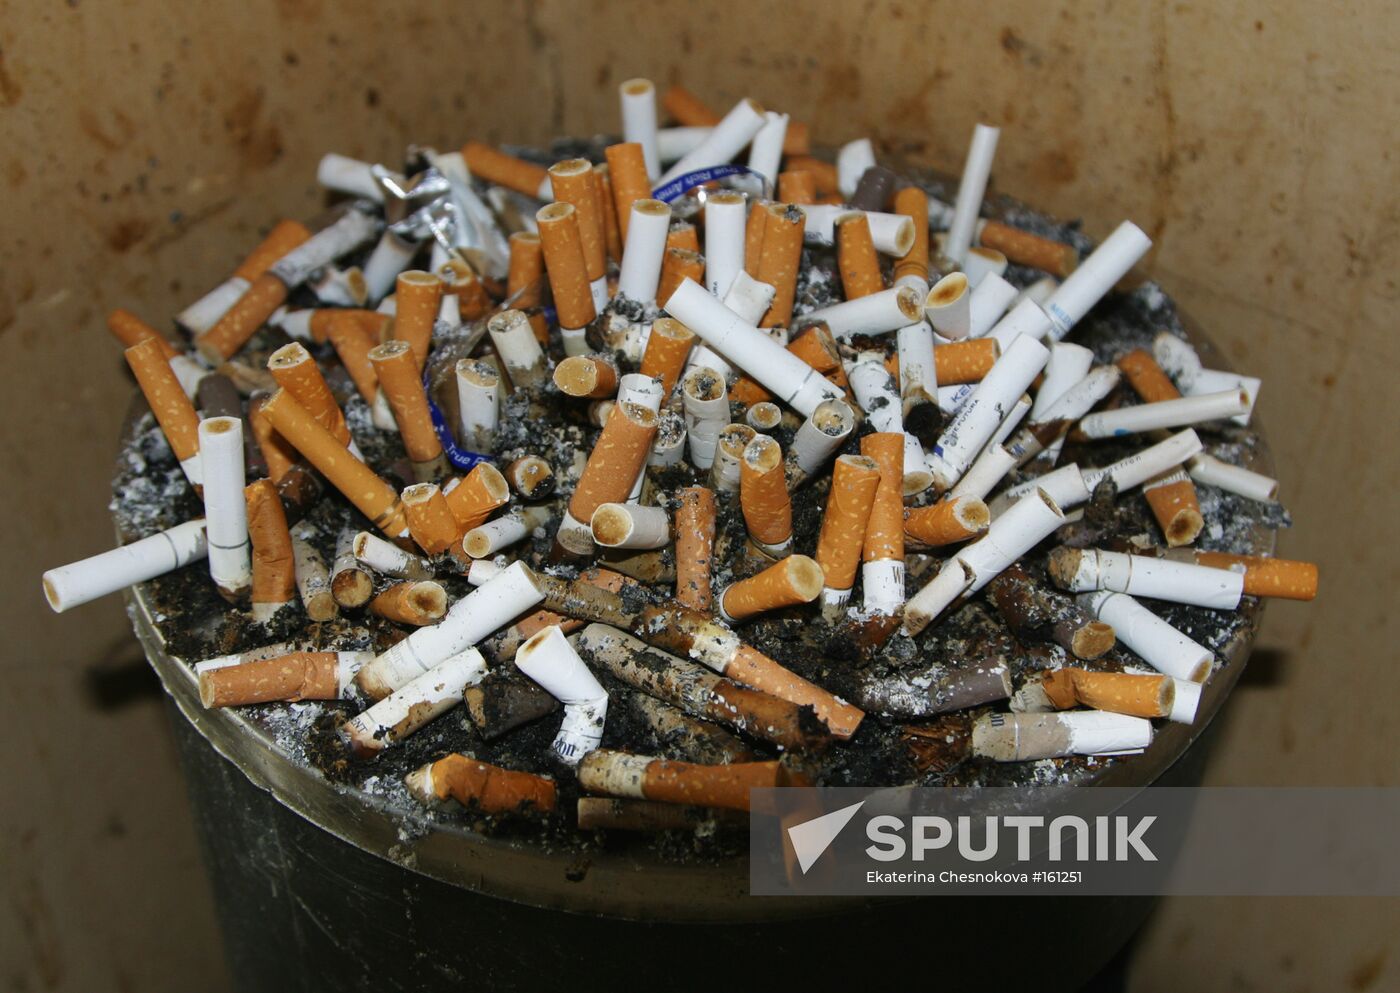 A cigarette bin